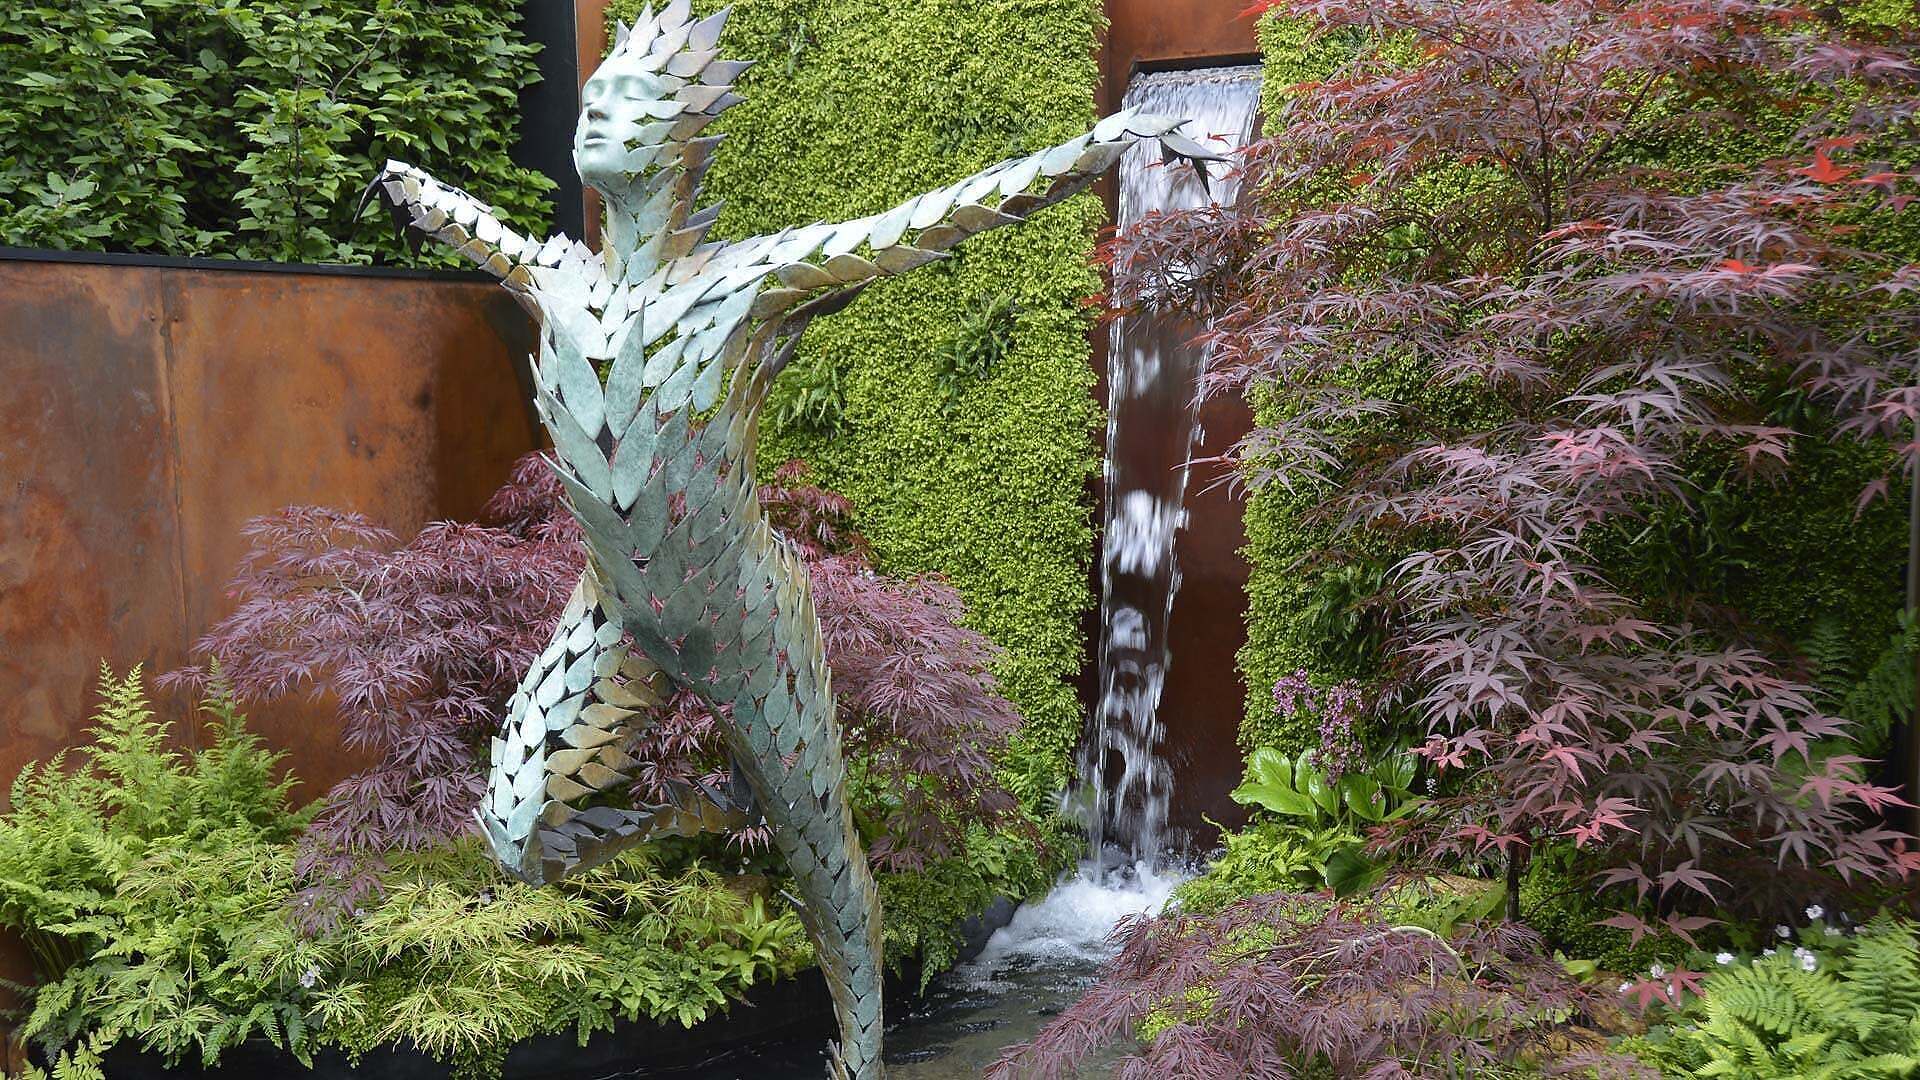 garden statue. Gardens – a vision of paradise?